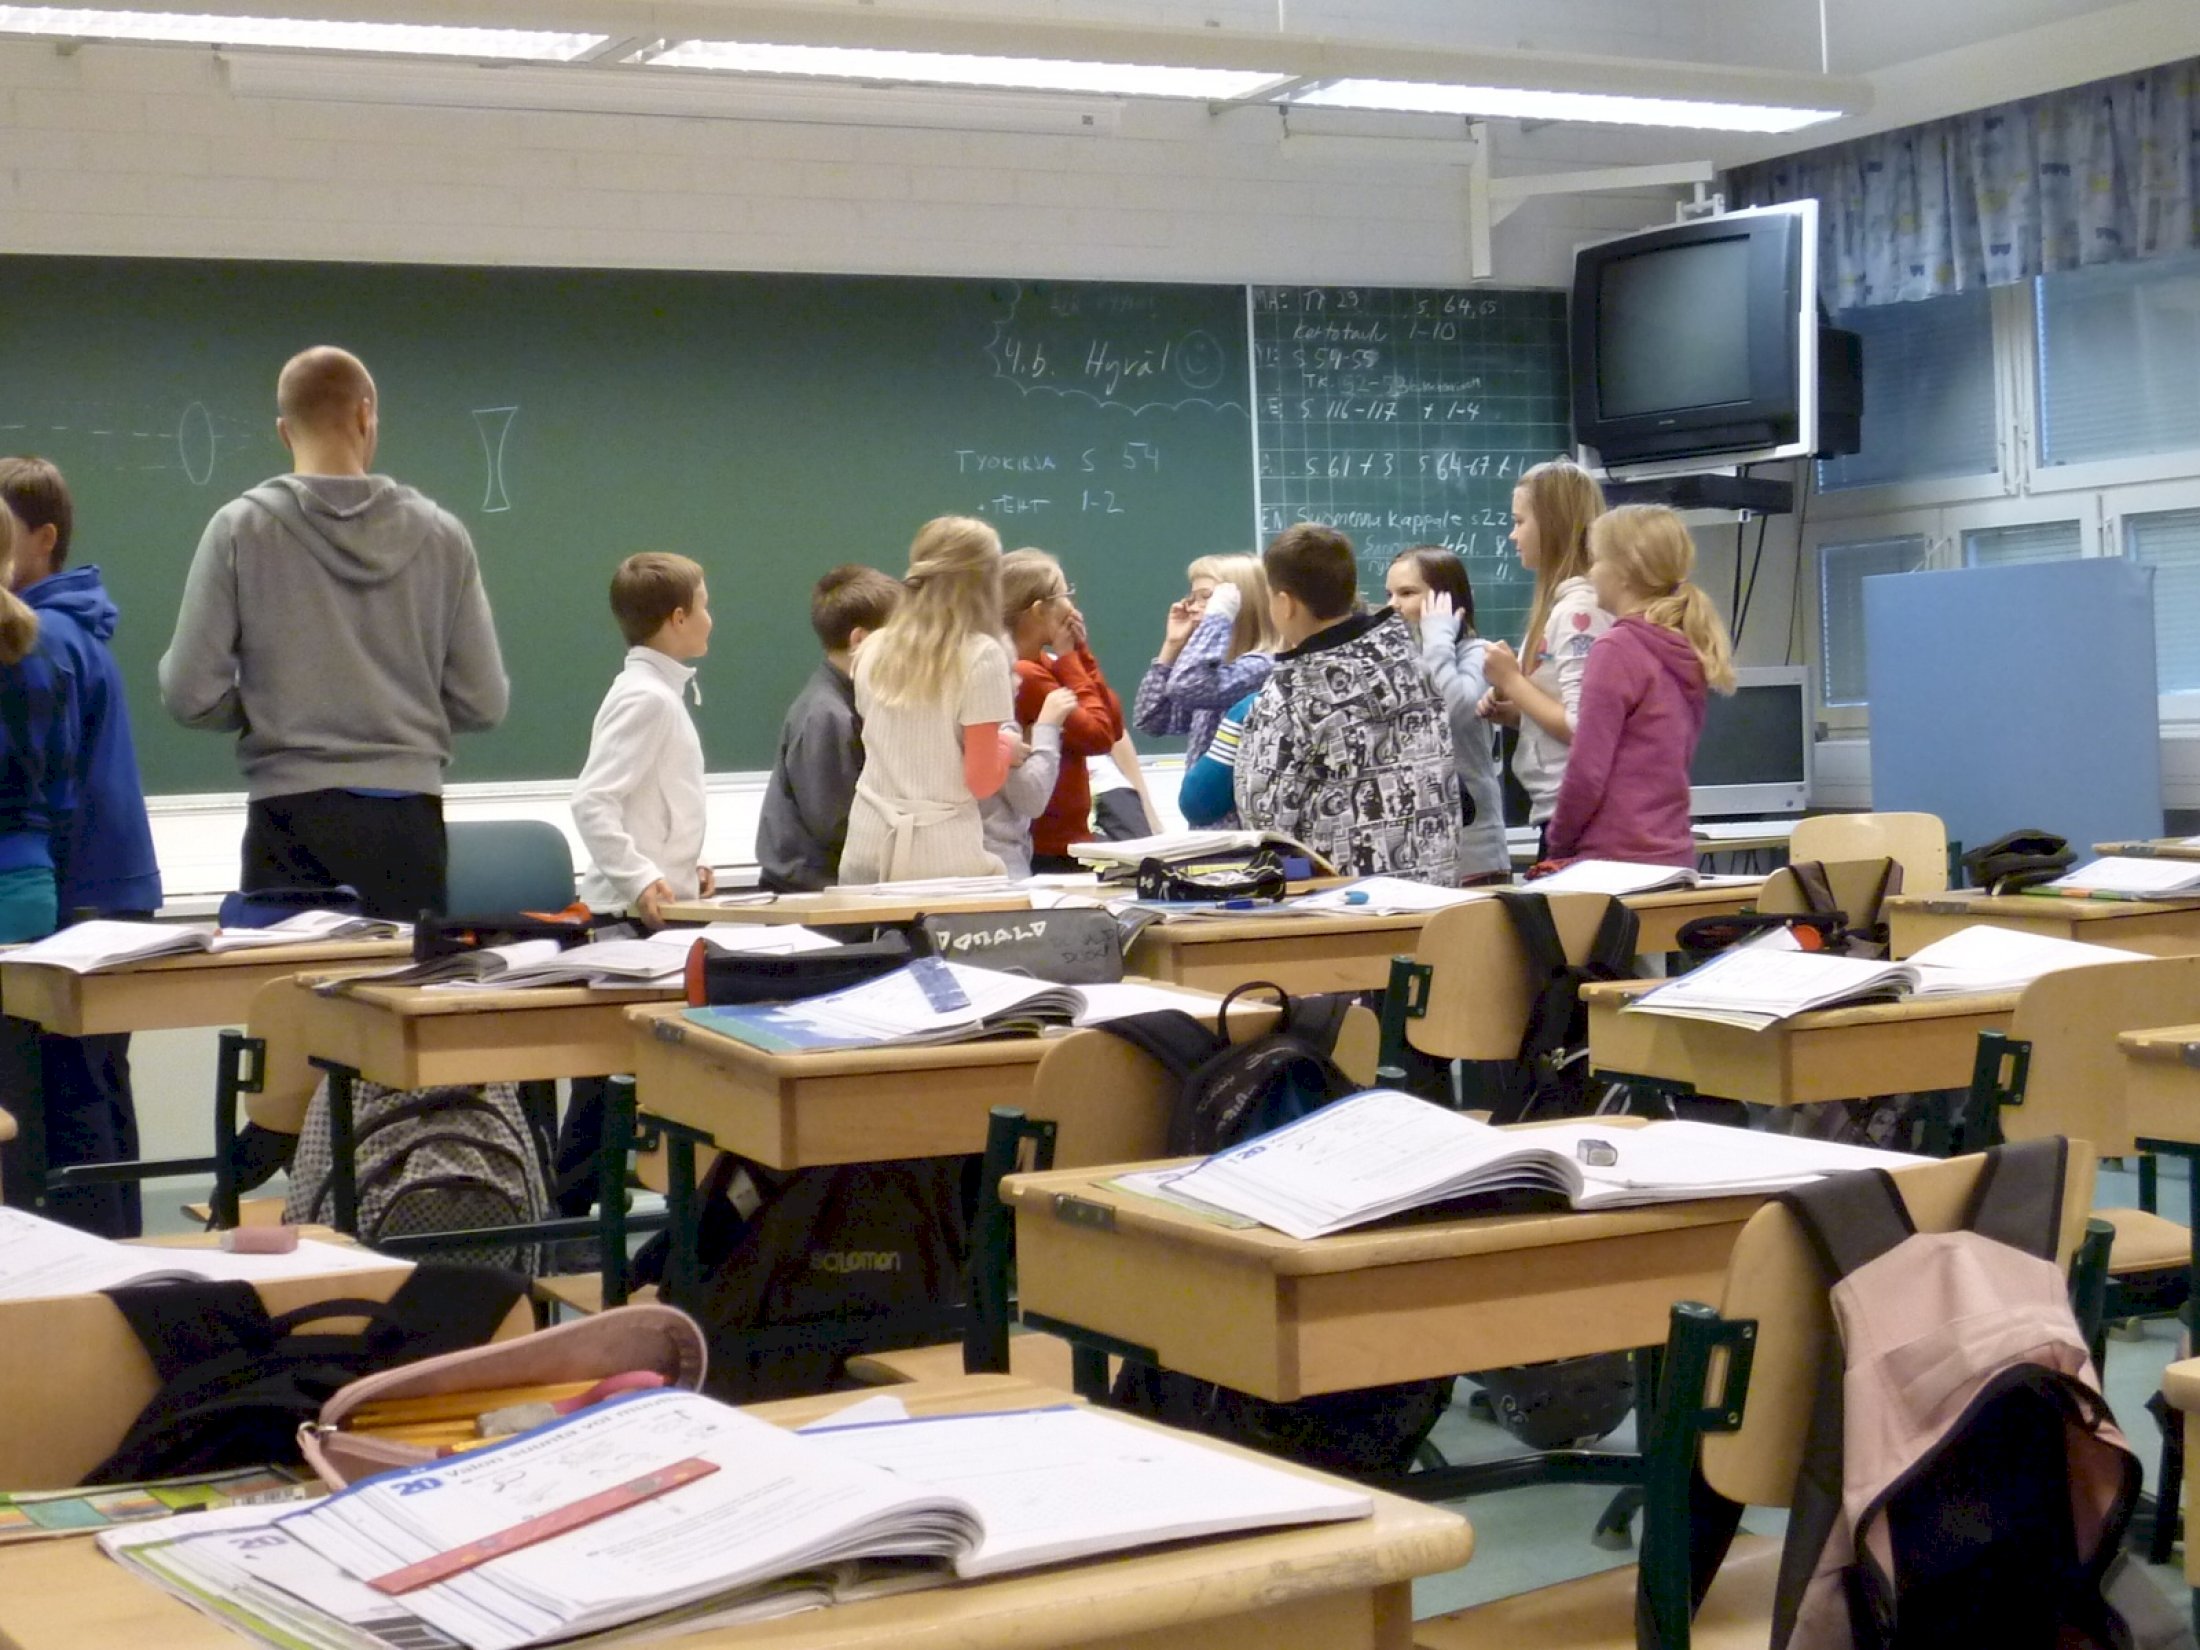 Почти половина жителей Украины против закрытия русских школ